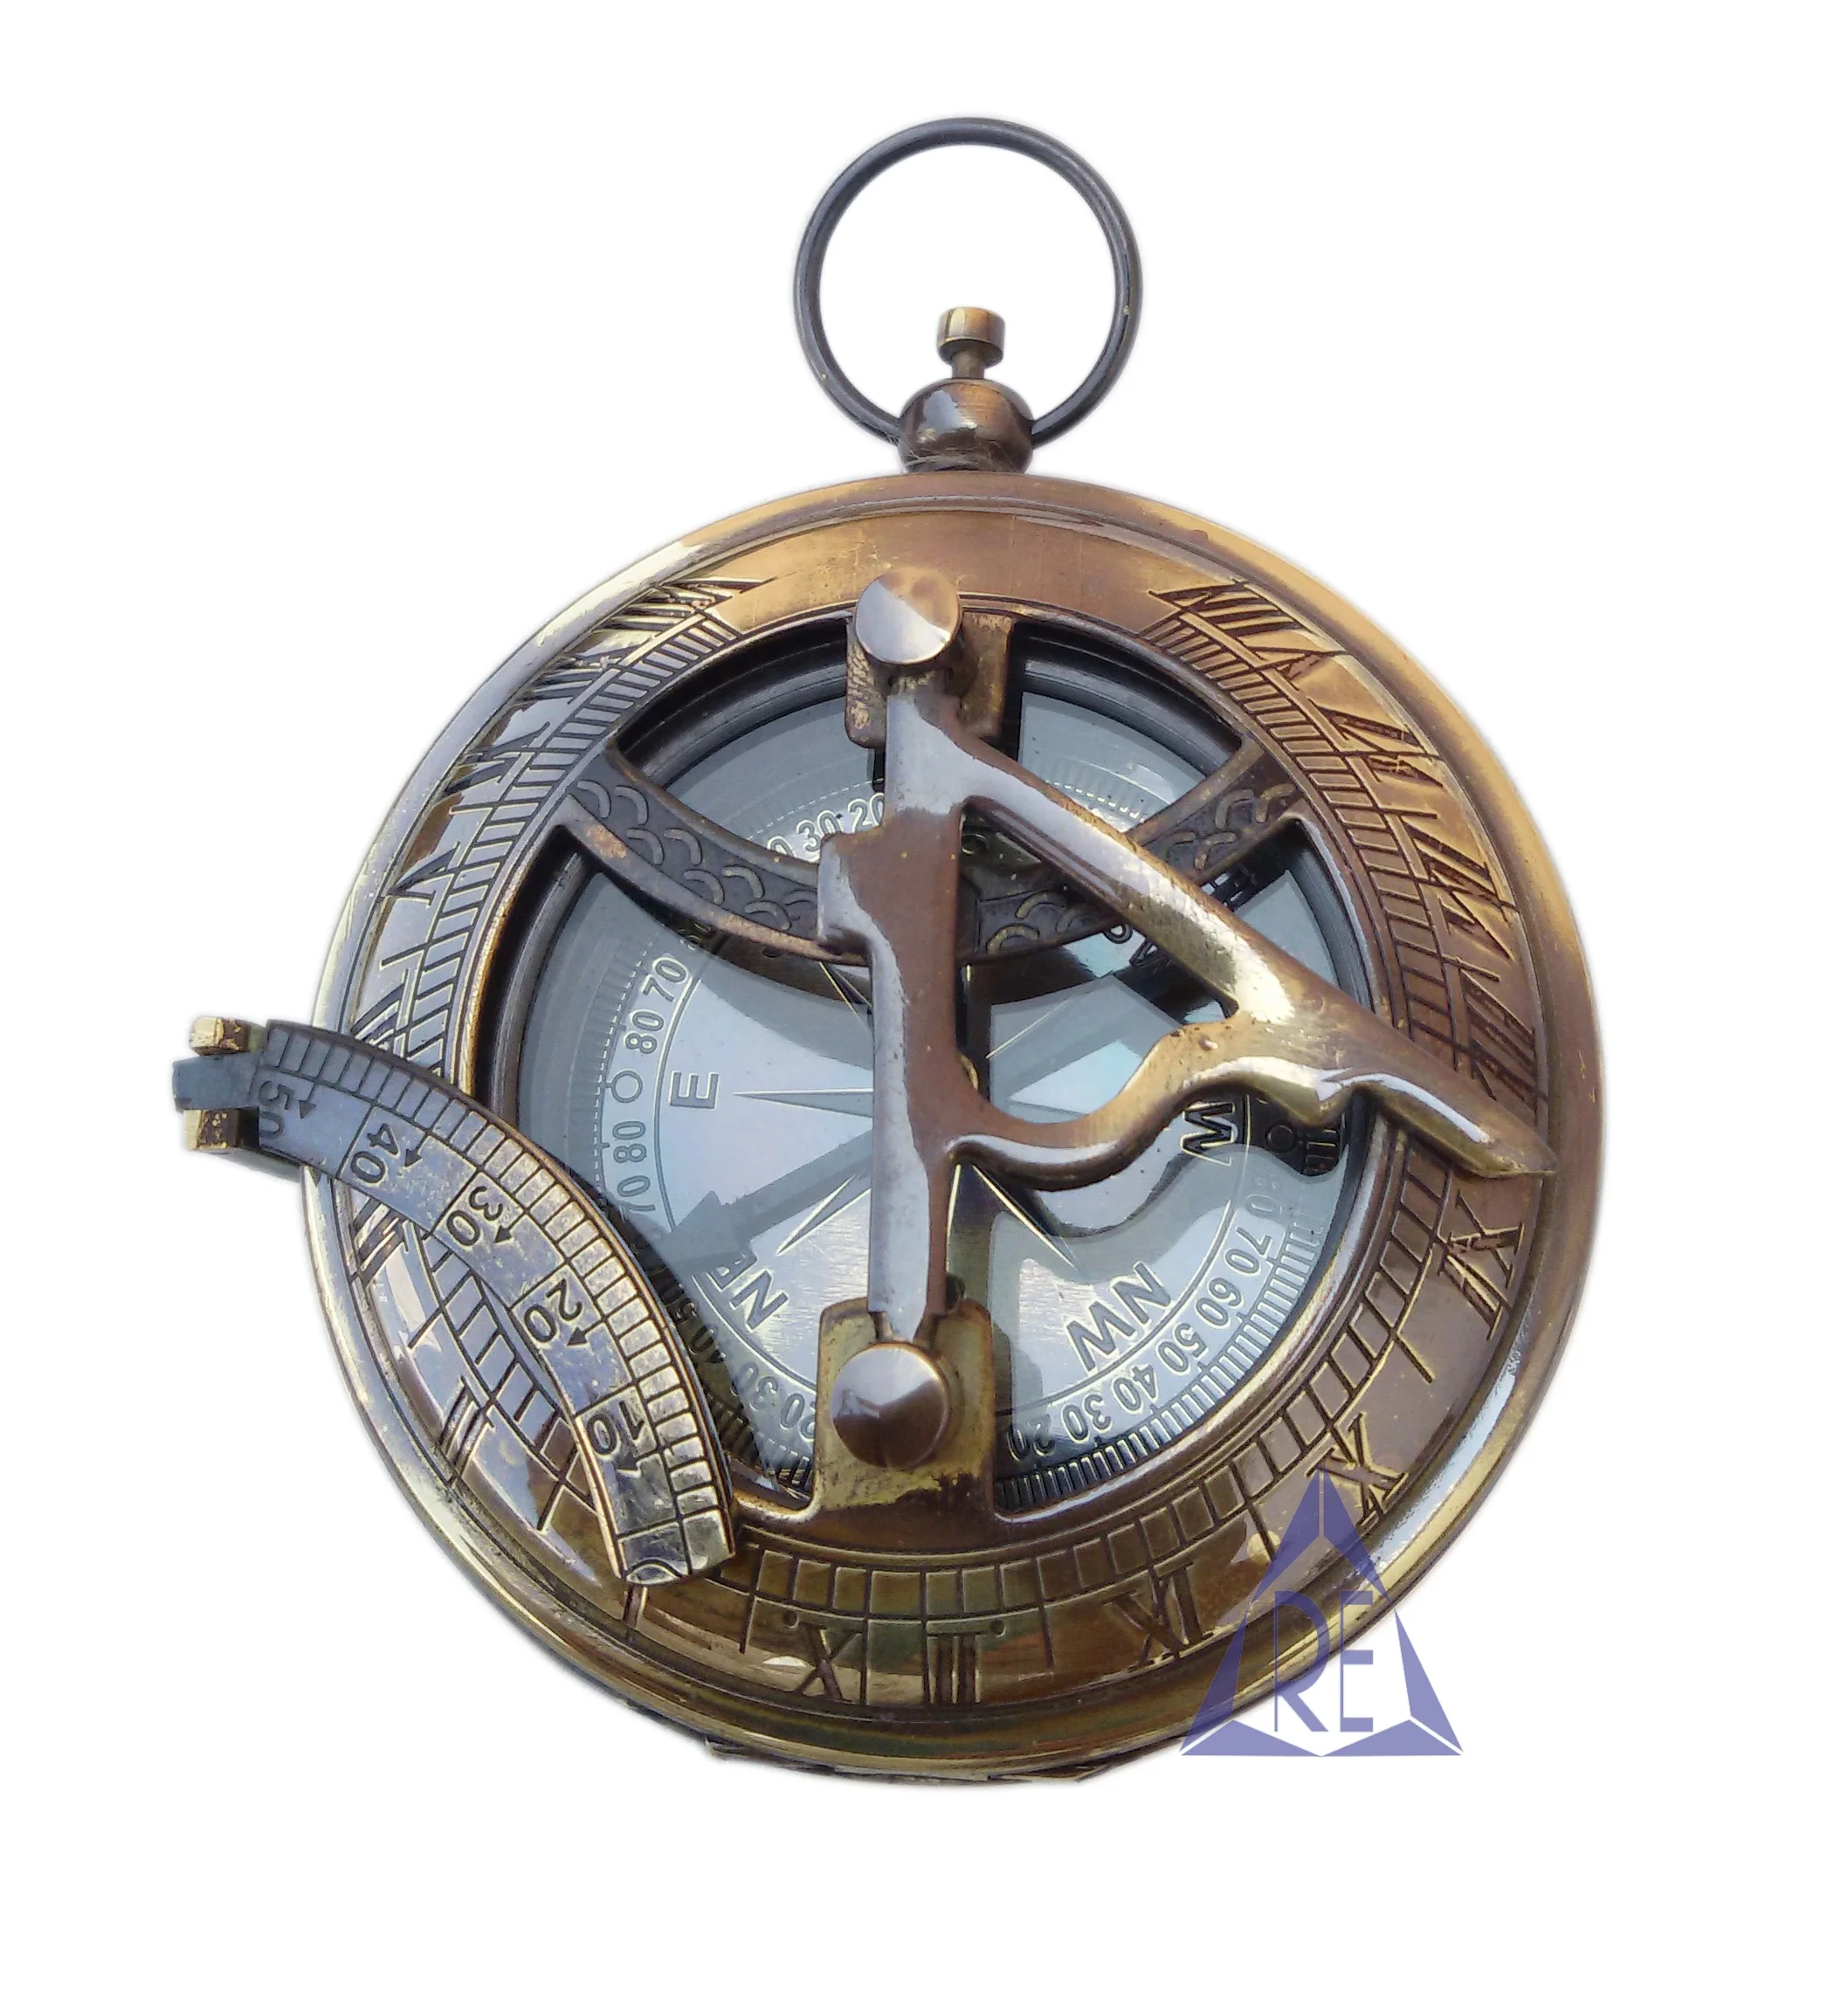 Details about   Antique Brass Sundial Compass Pocket Compass Lock Spun Marine Handmade Gift Item 